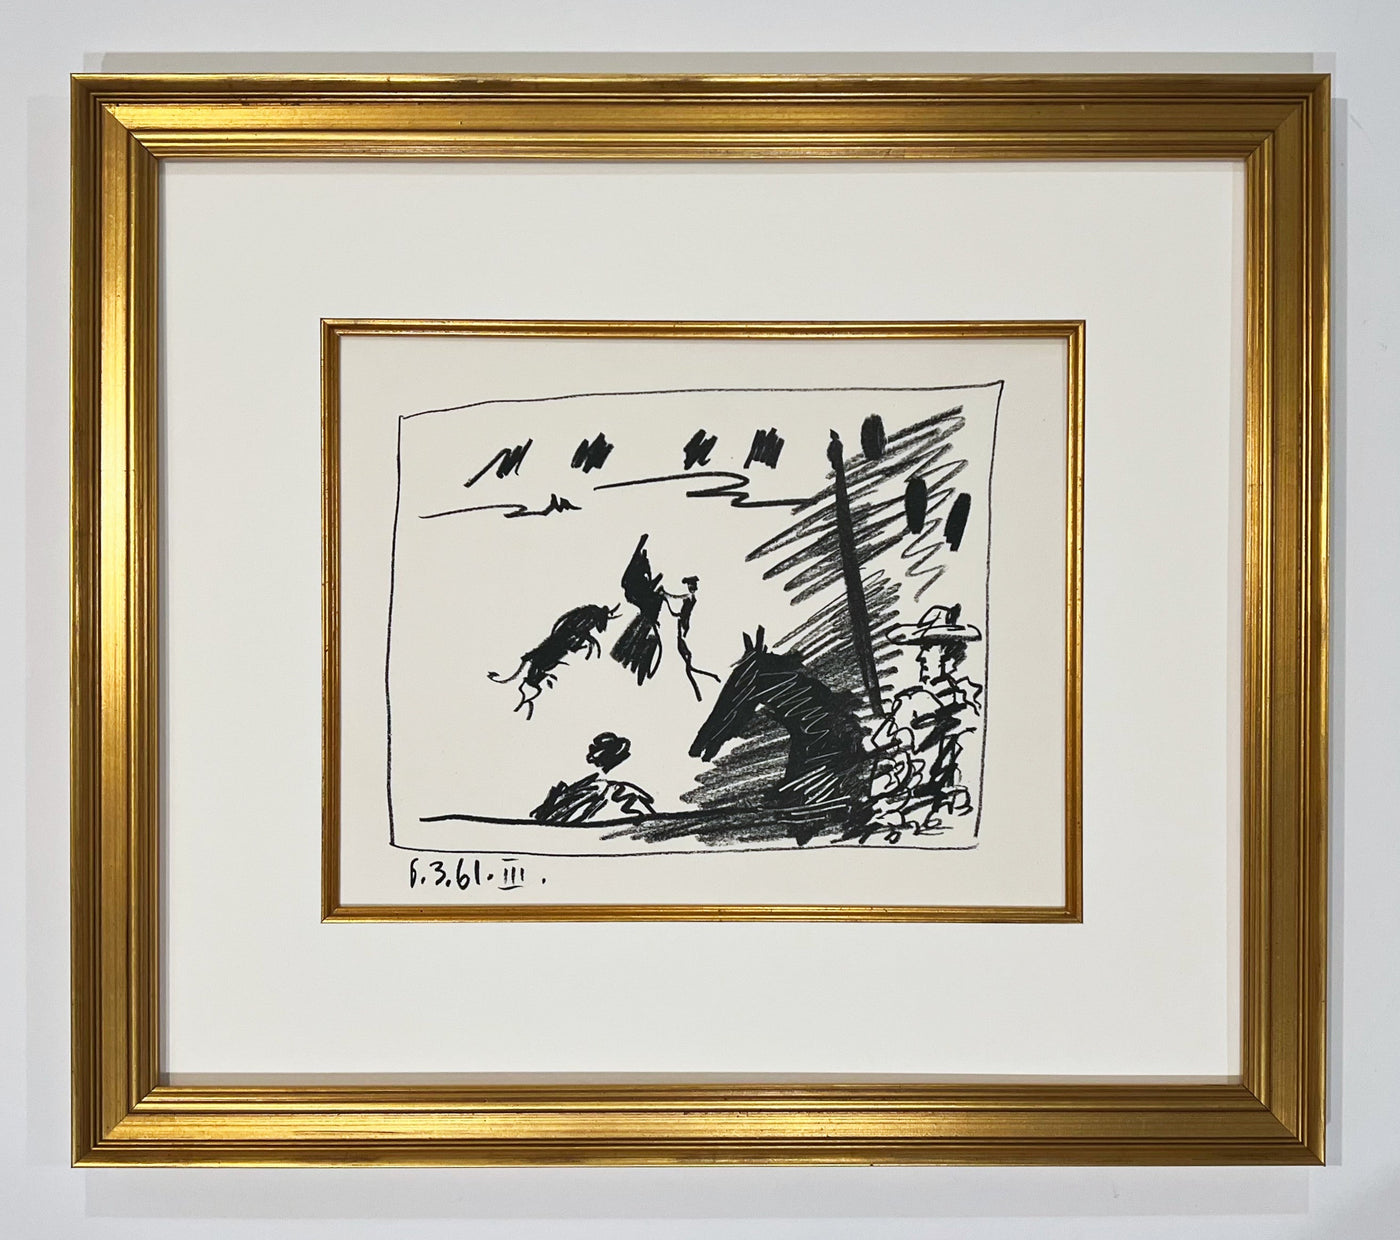 Pablo Picasso A Los Toros Avec Picasso (Set of Four in Gold Frames) (Cramer 113) 1961